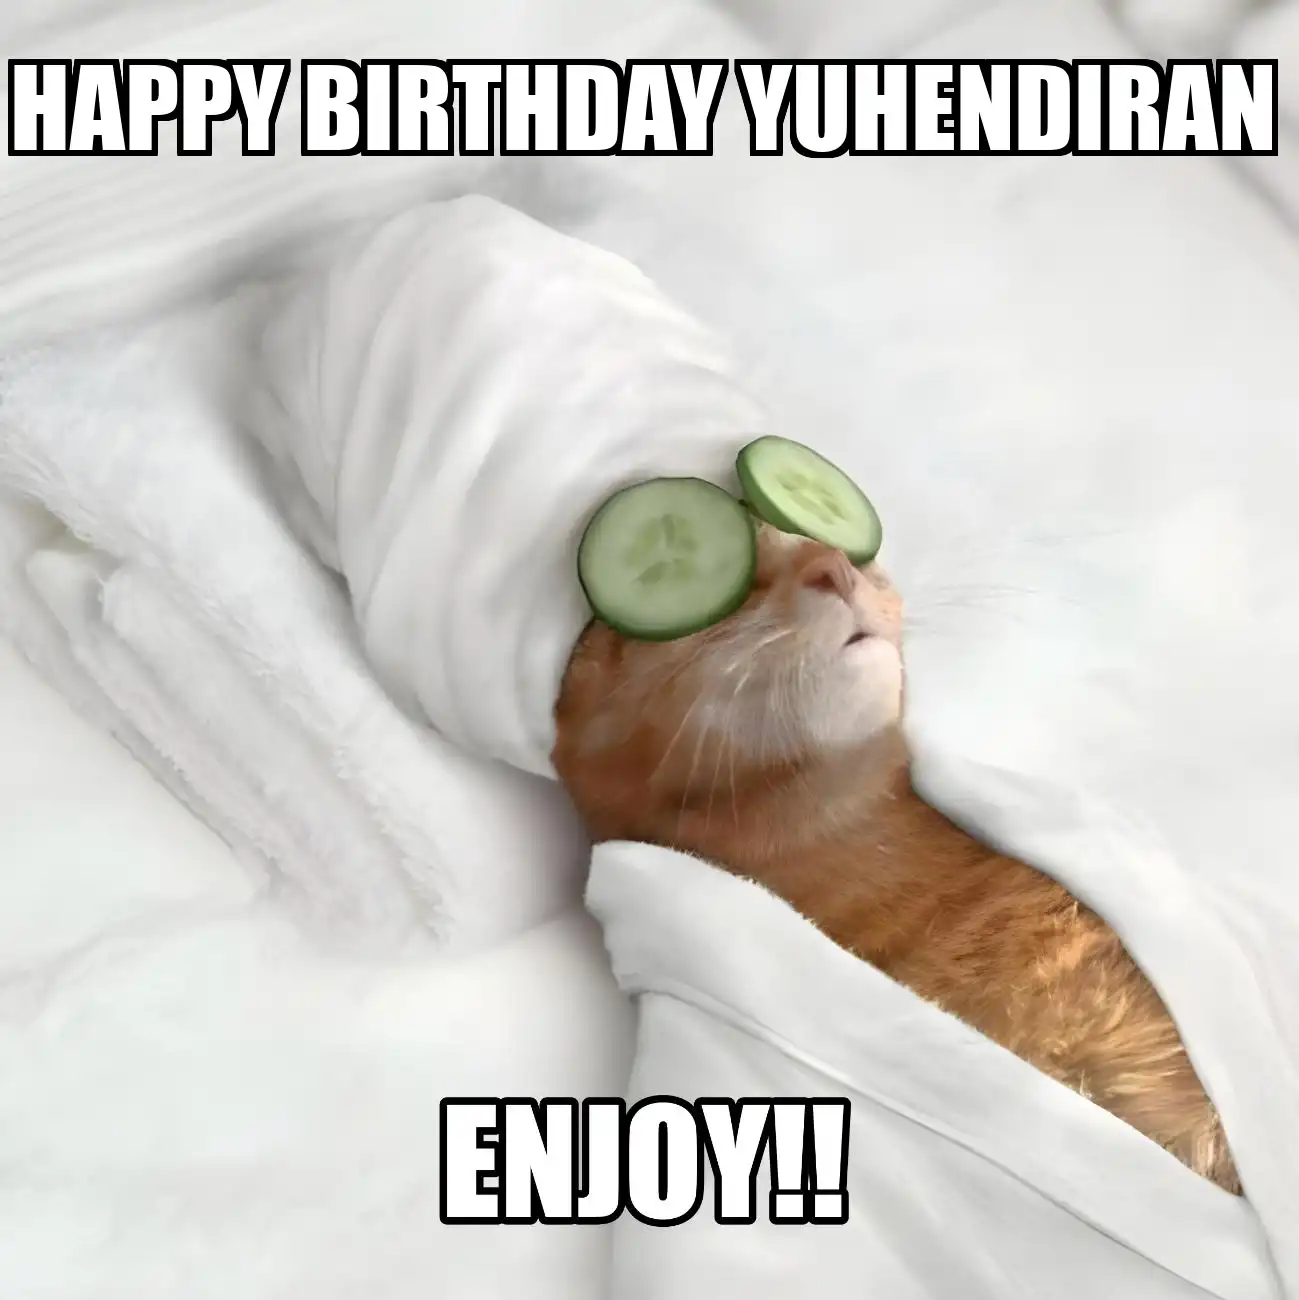 Happy Birthday Yuhendiran Enjoy Cat Meme